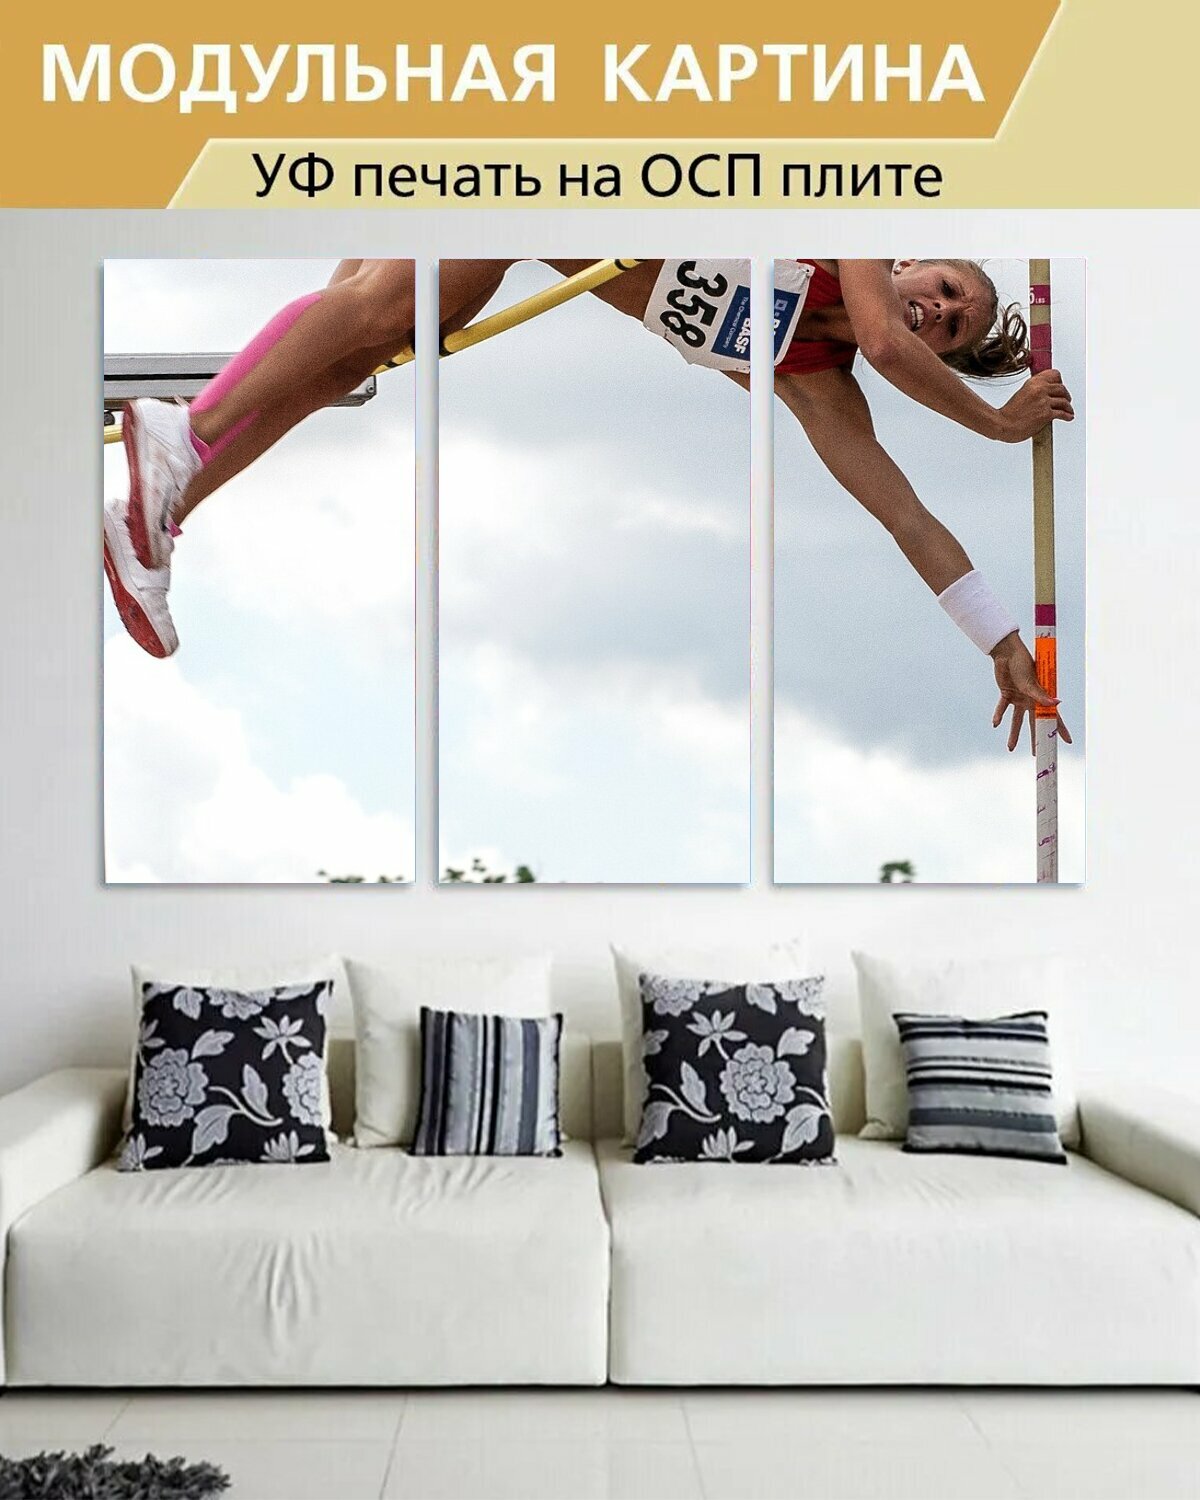 Модульная картина на ОСП "Лёгкая атлетика, прыжок с шестом, виды спорта" 188x125 см. 3 части для интерьера на стену